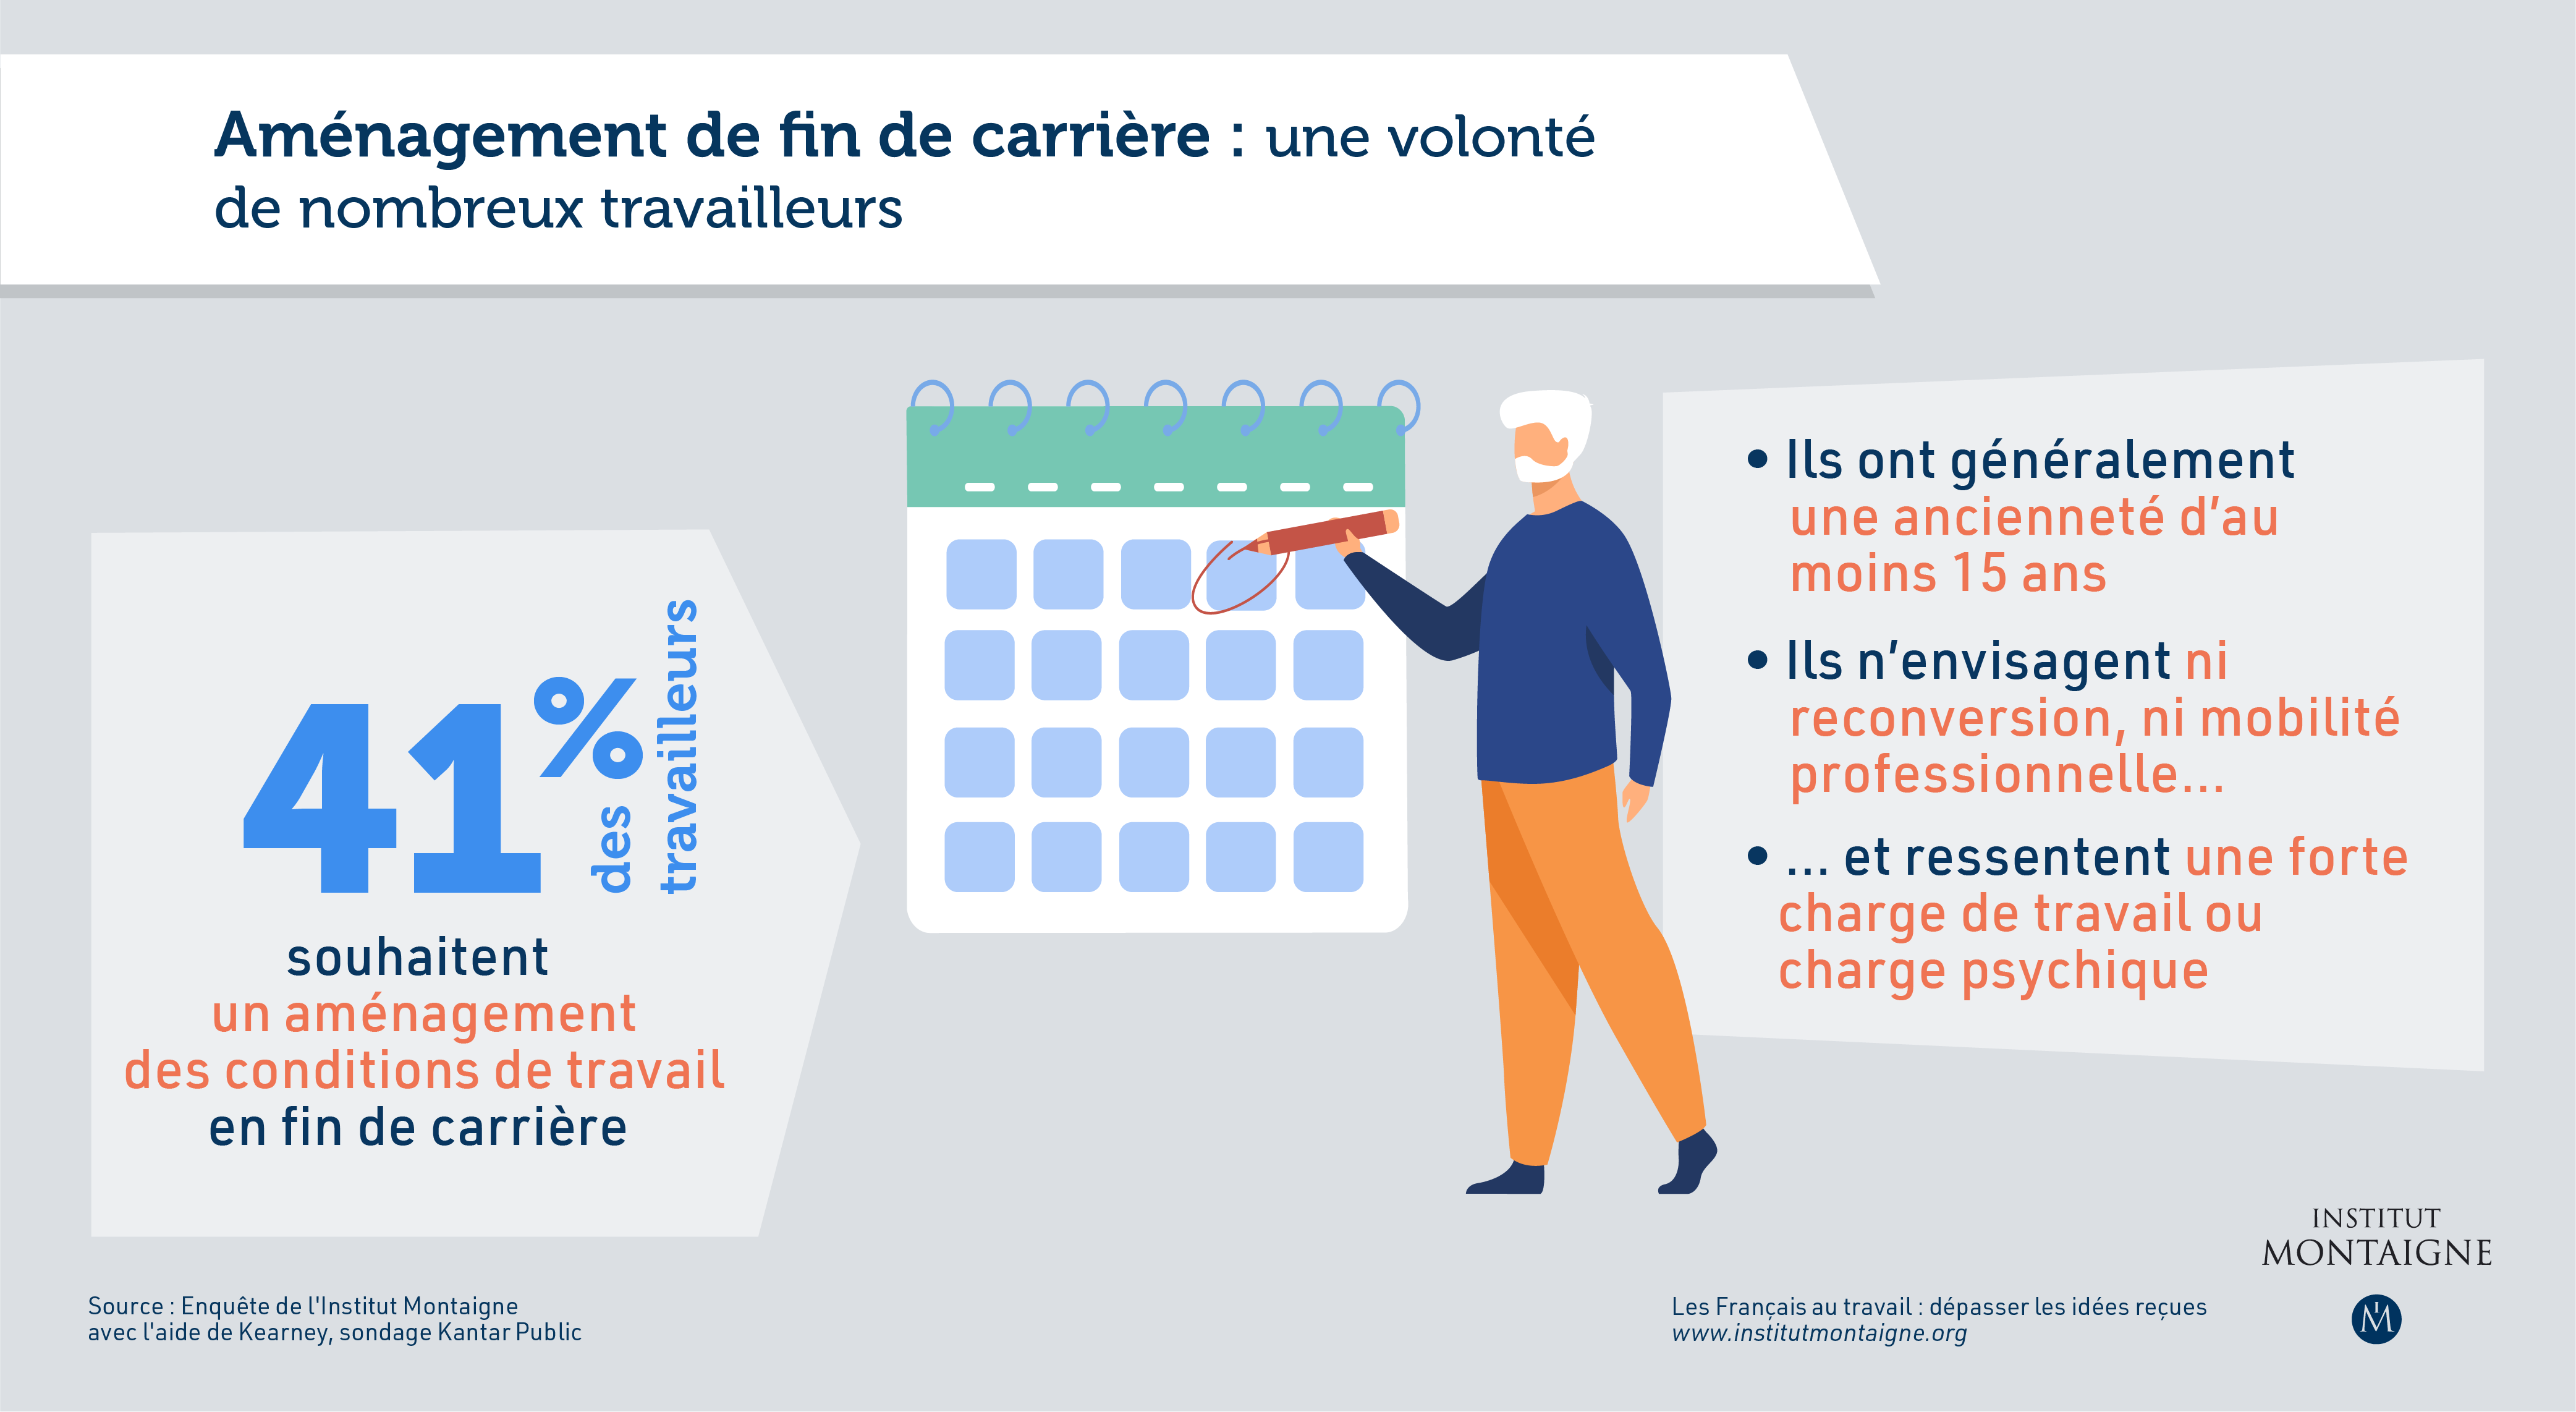 Les Français au travail : dépasser les idées reçues - infographie fin de carrière